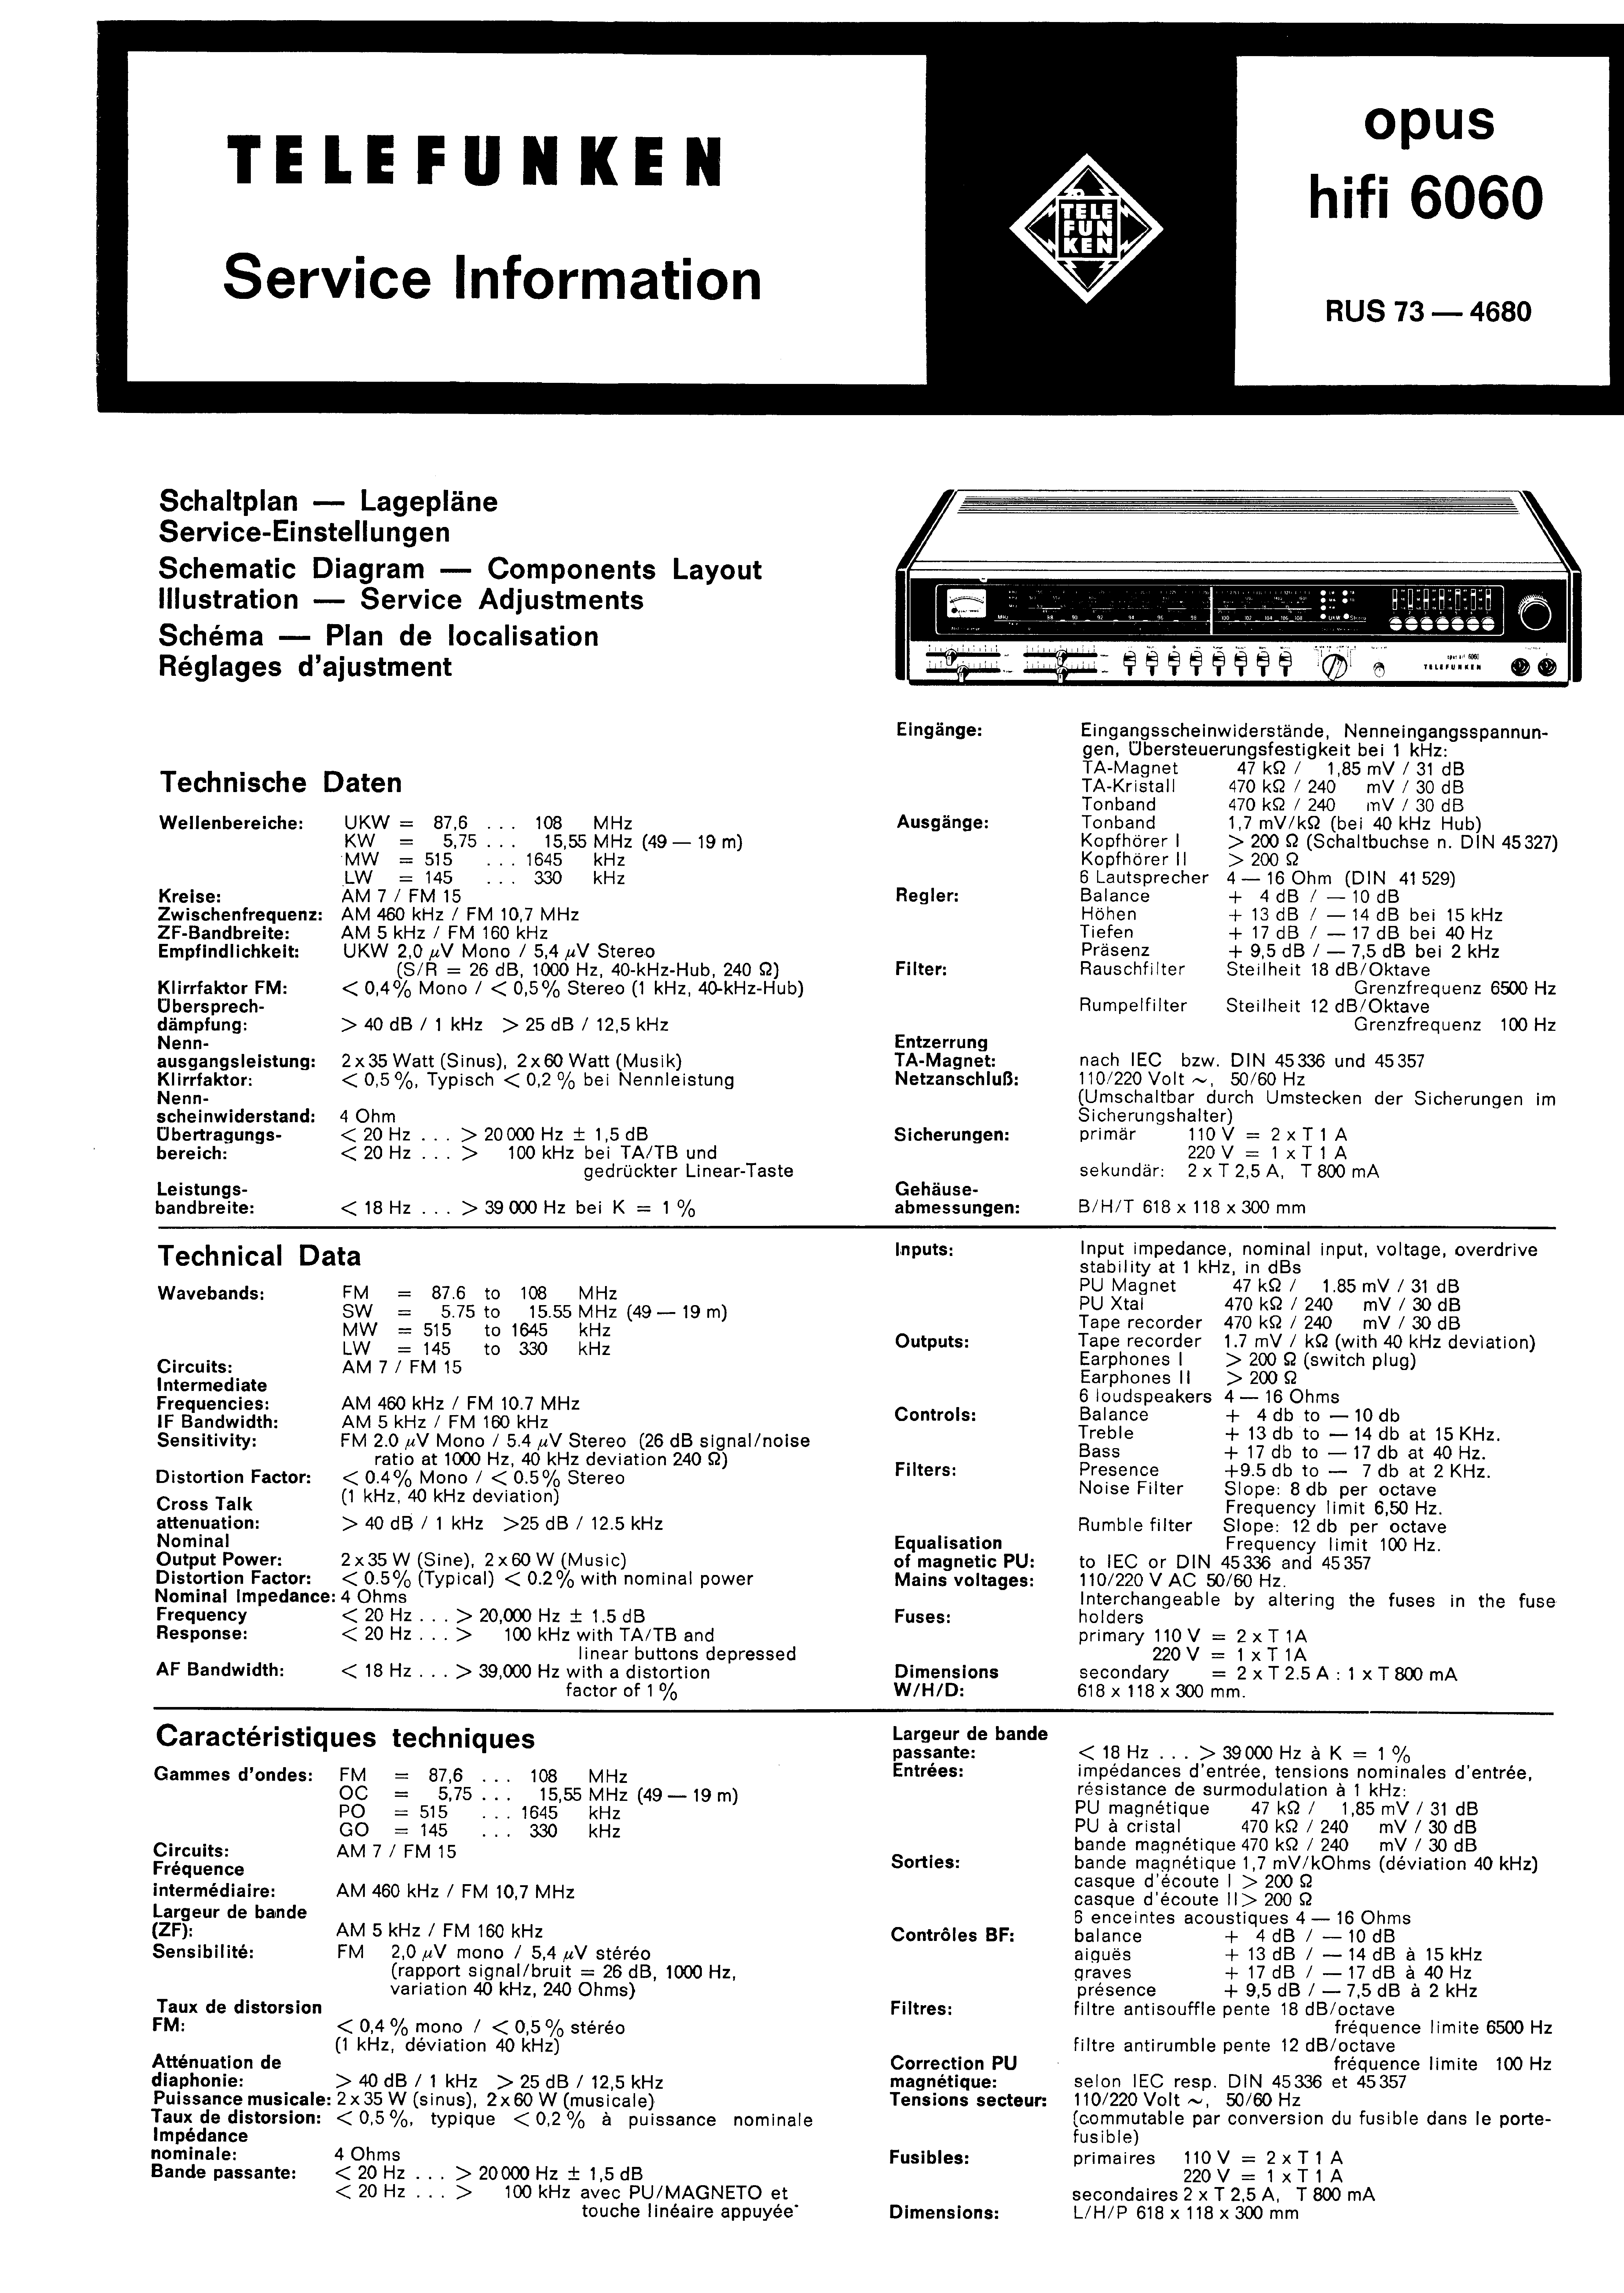 Service Manual-Anleitung für Telefunken Opus TS 